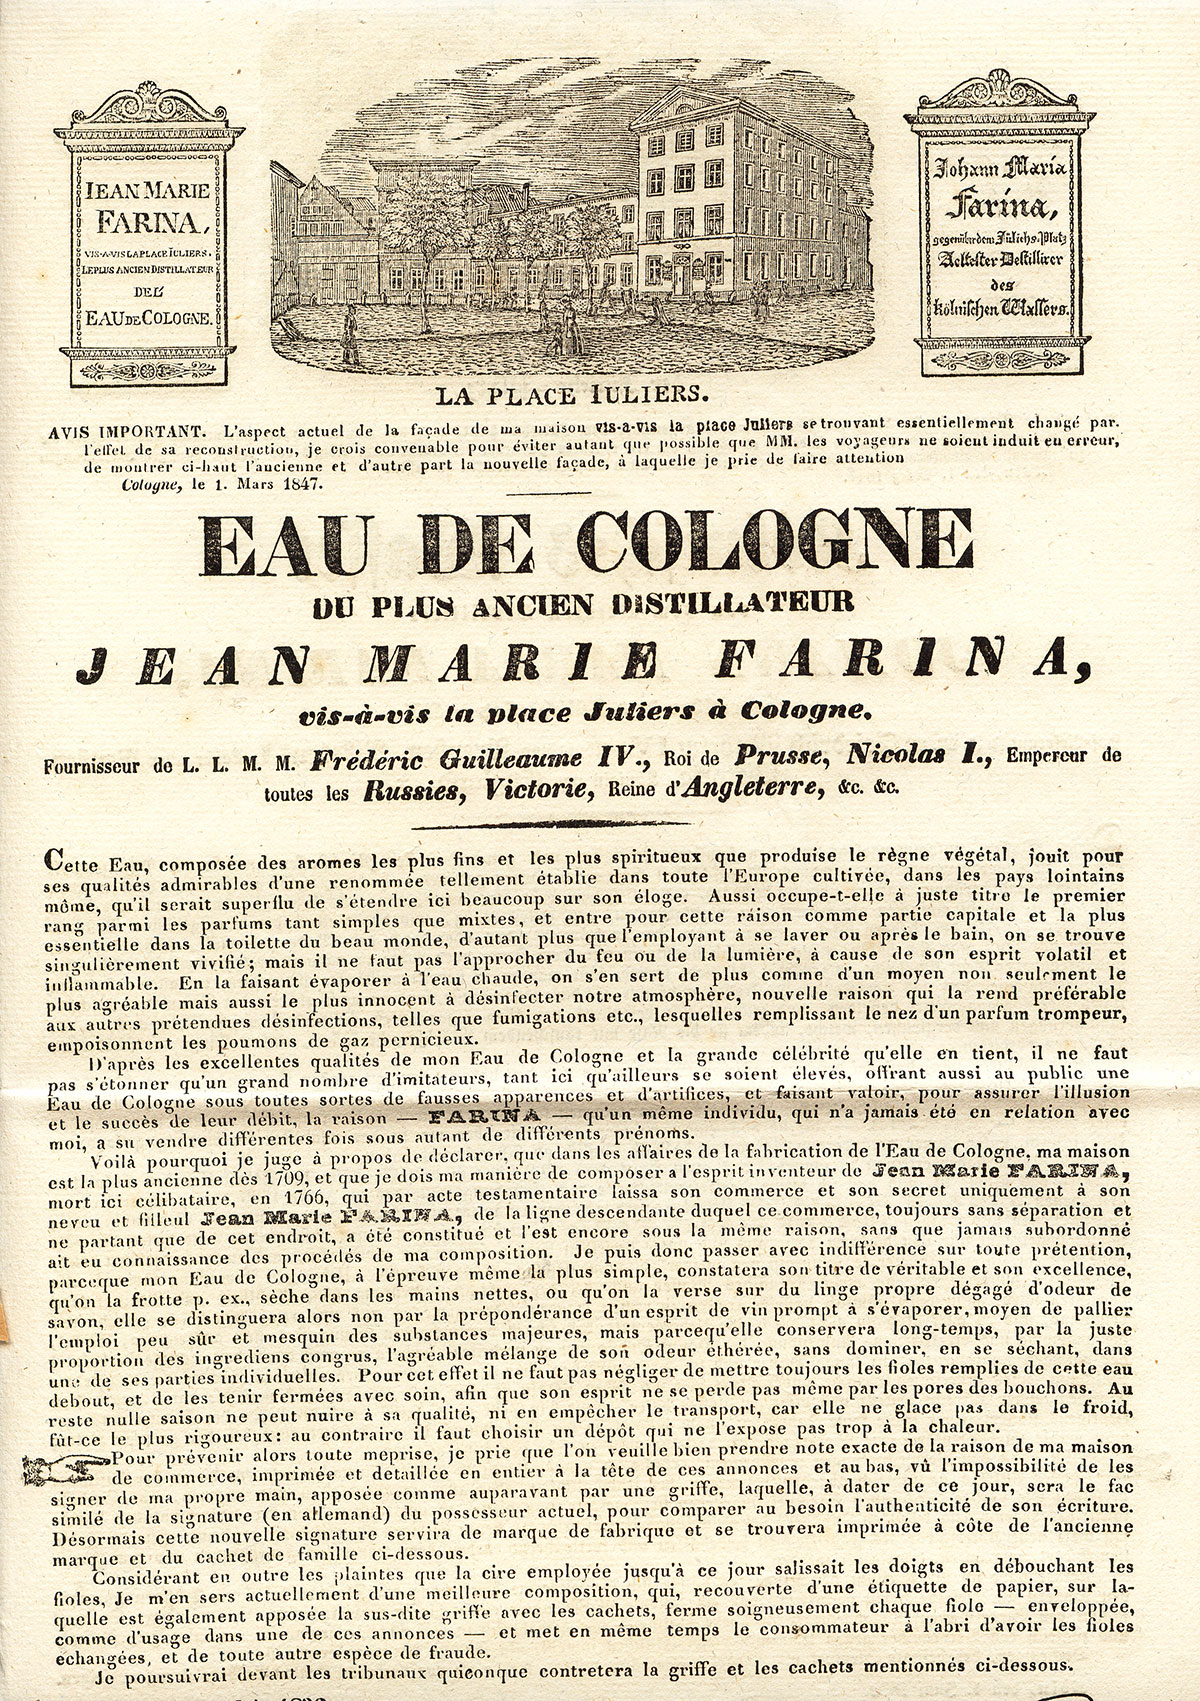 Prospectus datant de 1811 et vantant les mérites de l’Eau de Cologne.